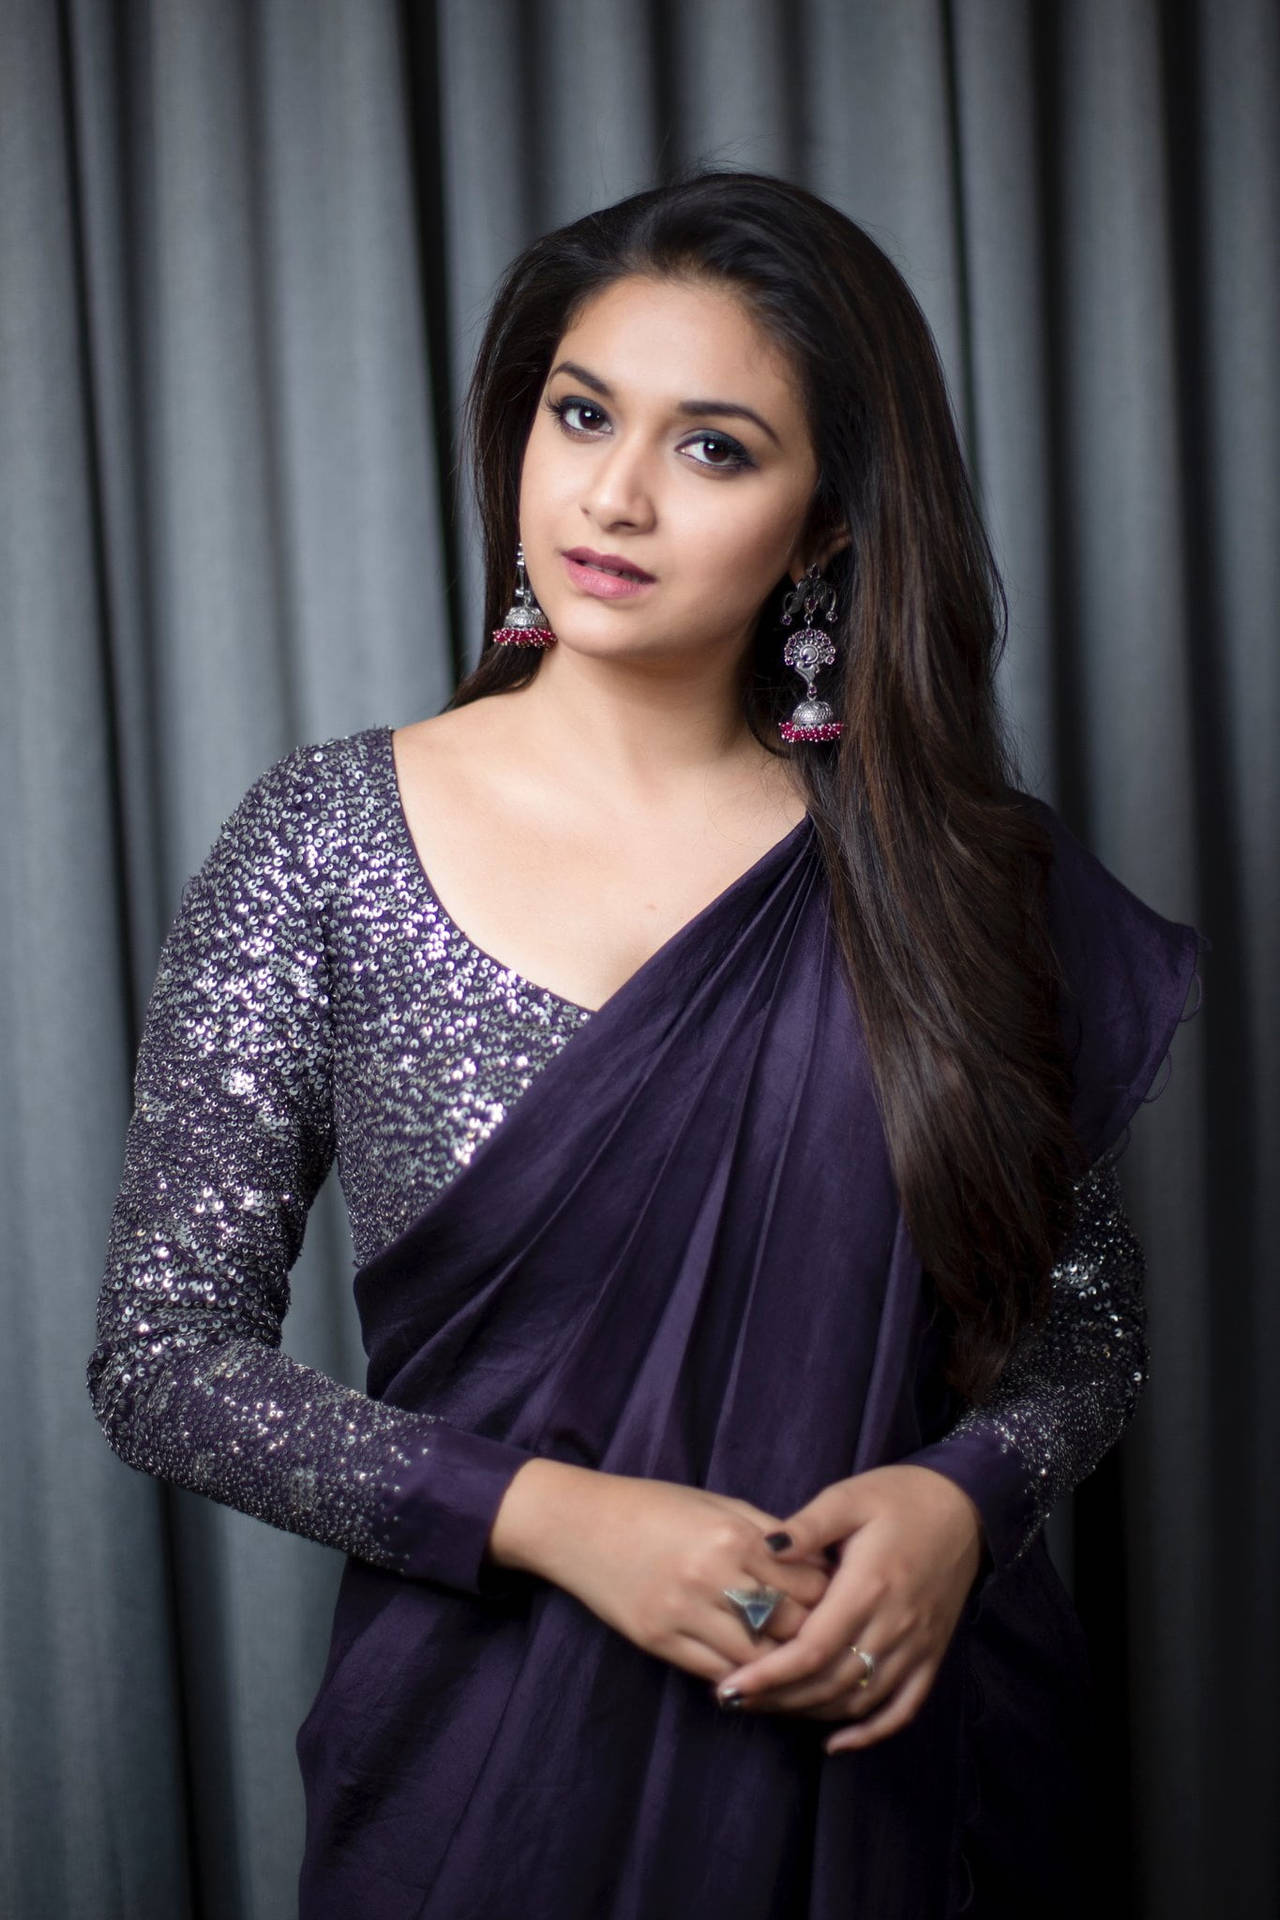 Keerthi Suresh Radiating Elegance in Dark Violet Outfit Wallpaper